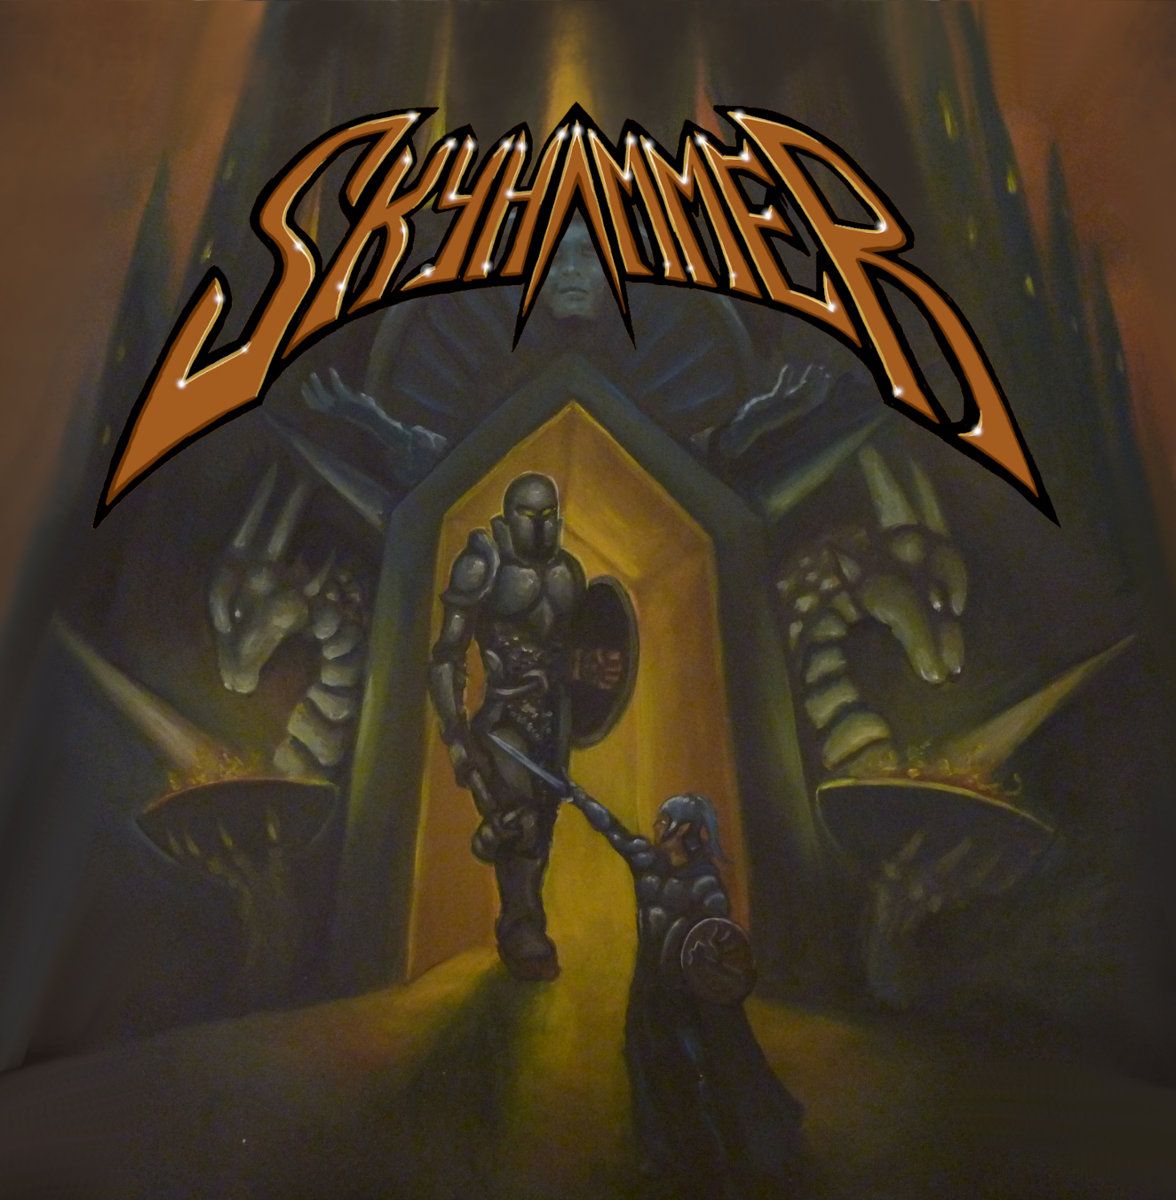 Skyhammer (Power Metal)